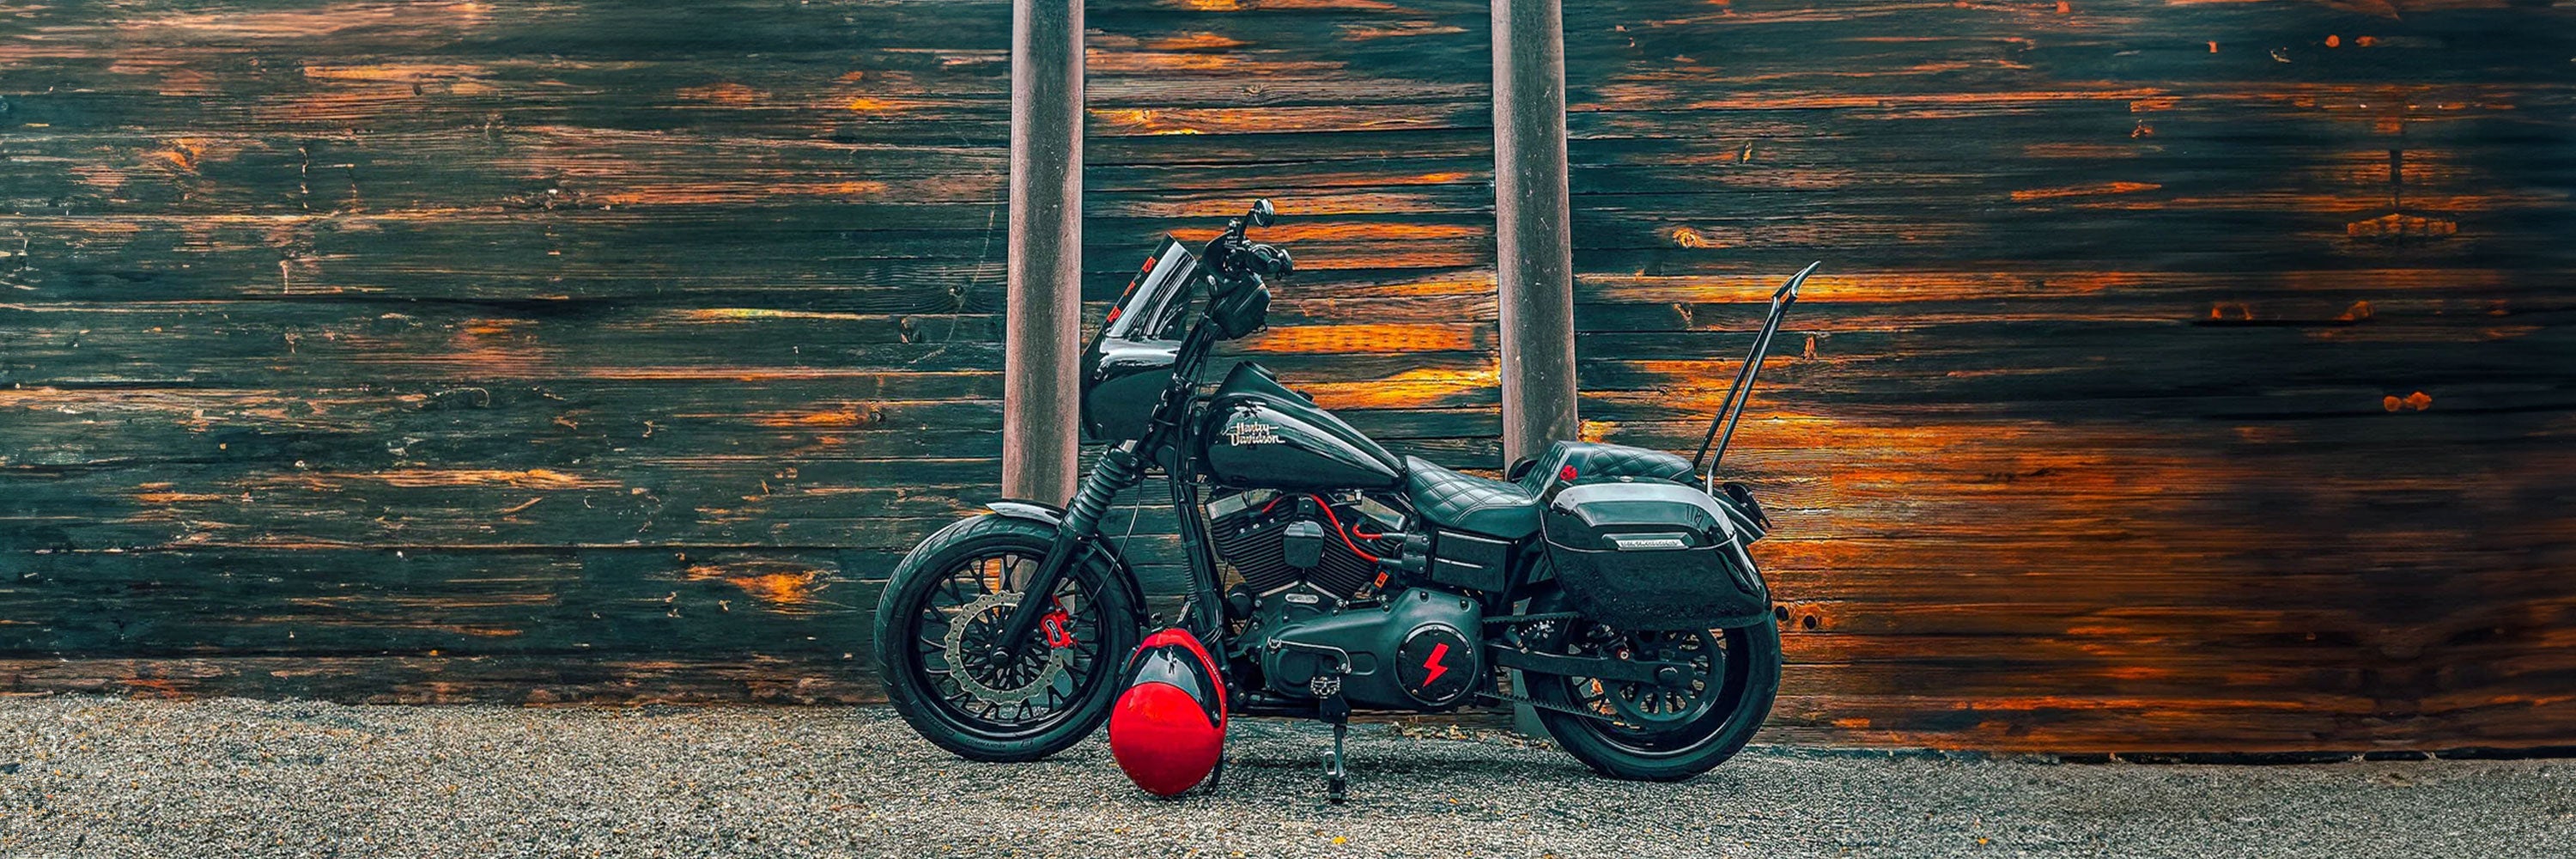 Harley Davidson Dyna Crash Bars